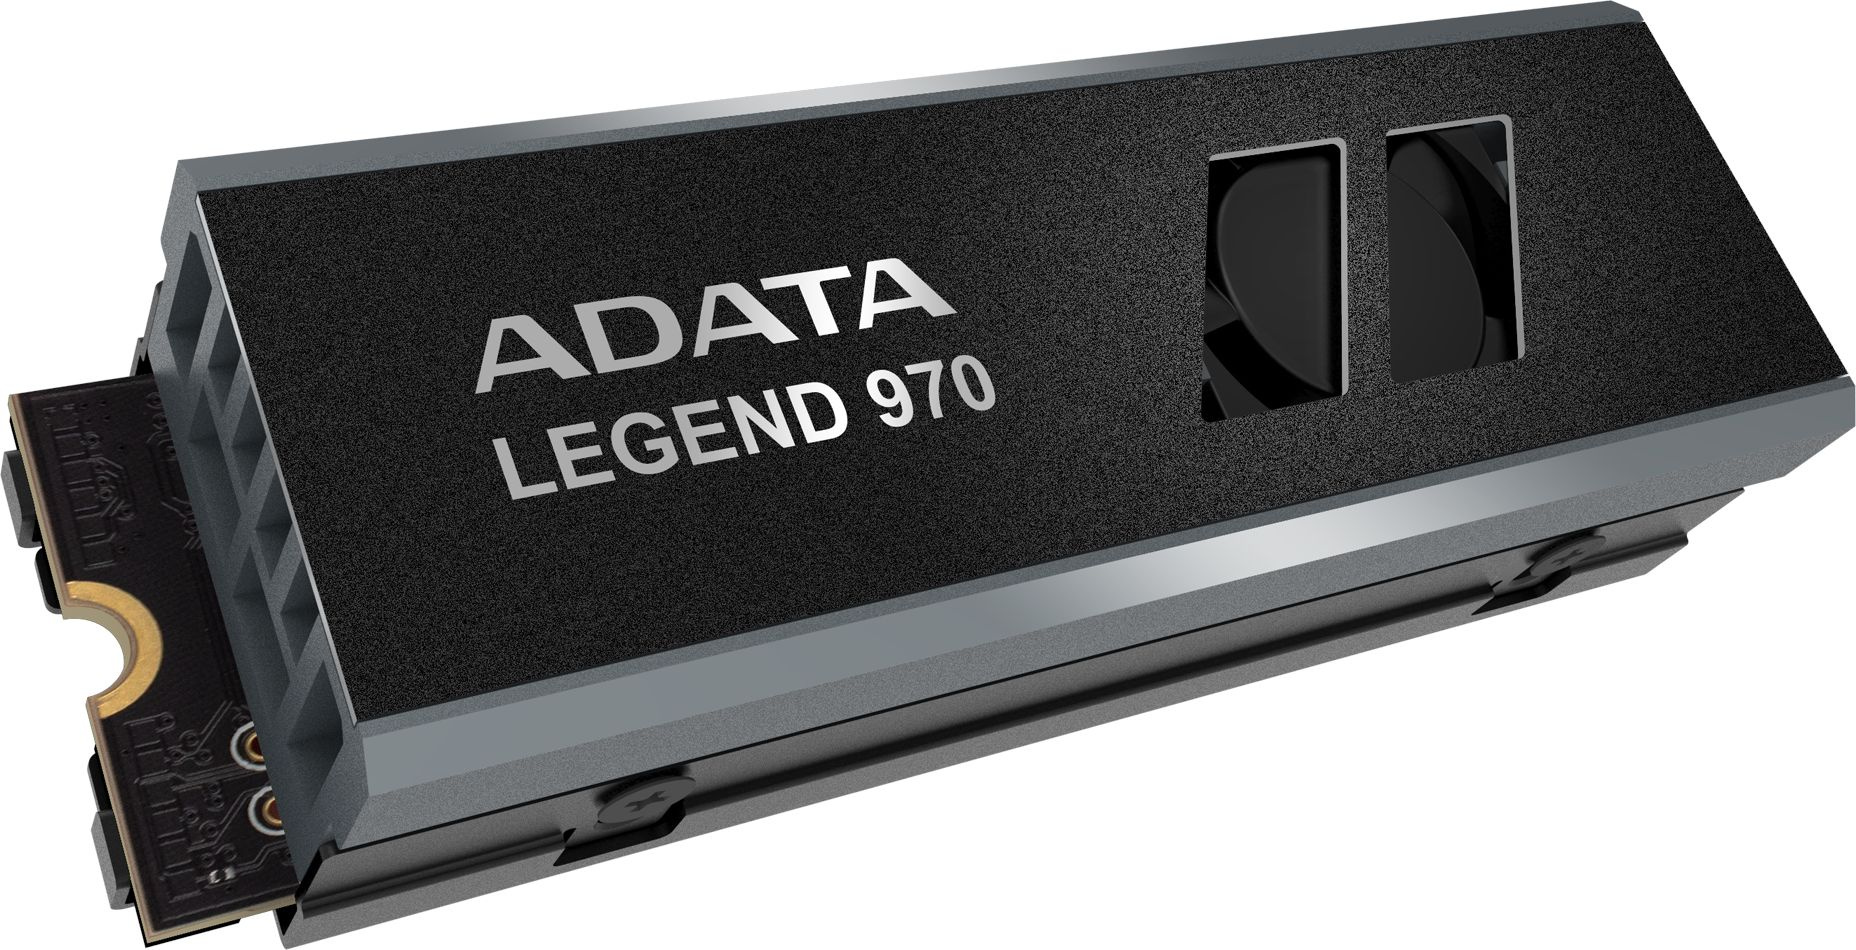 SSD  A-Data Legend 970 SLEG-970-2000GCI 2, M.2 2280, PCIe 5.0 x4,  M.2